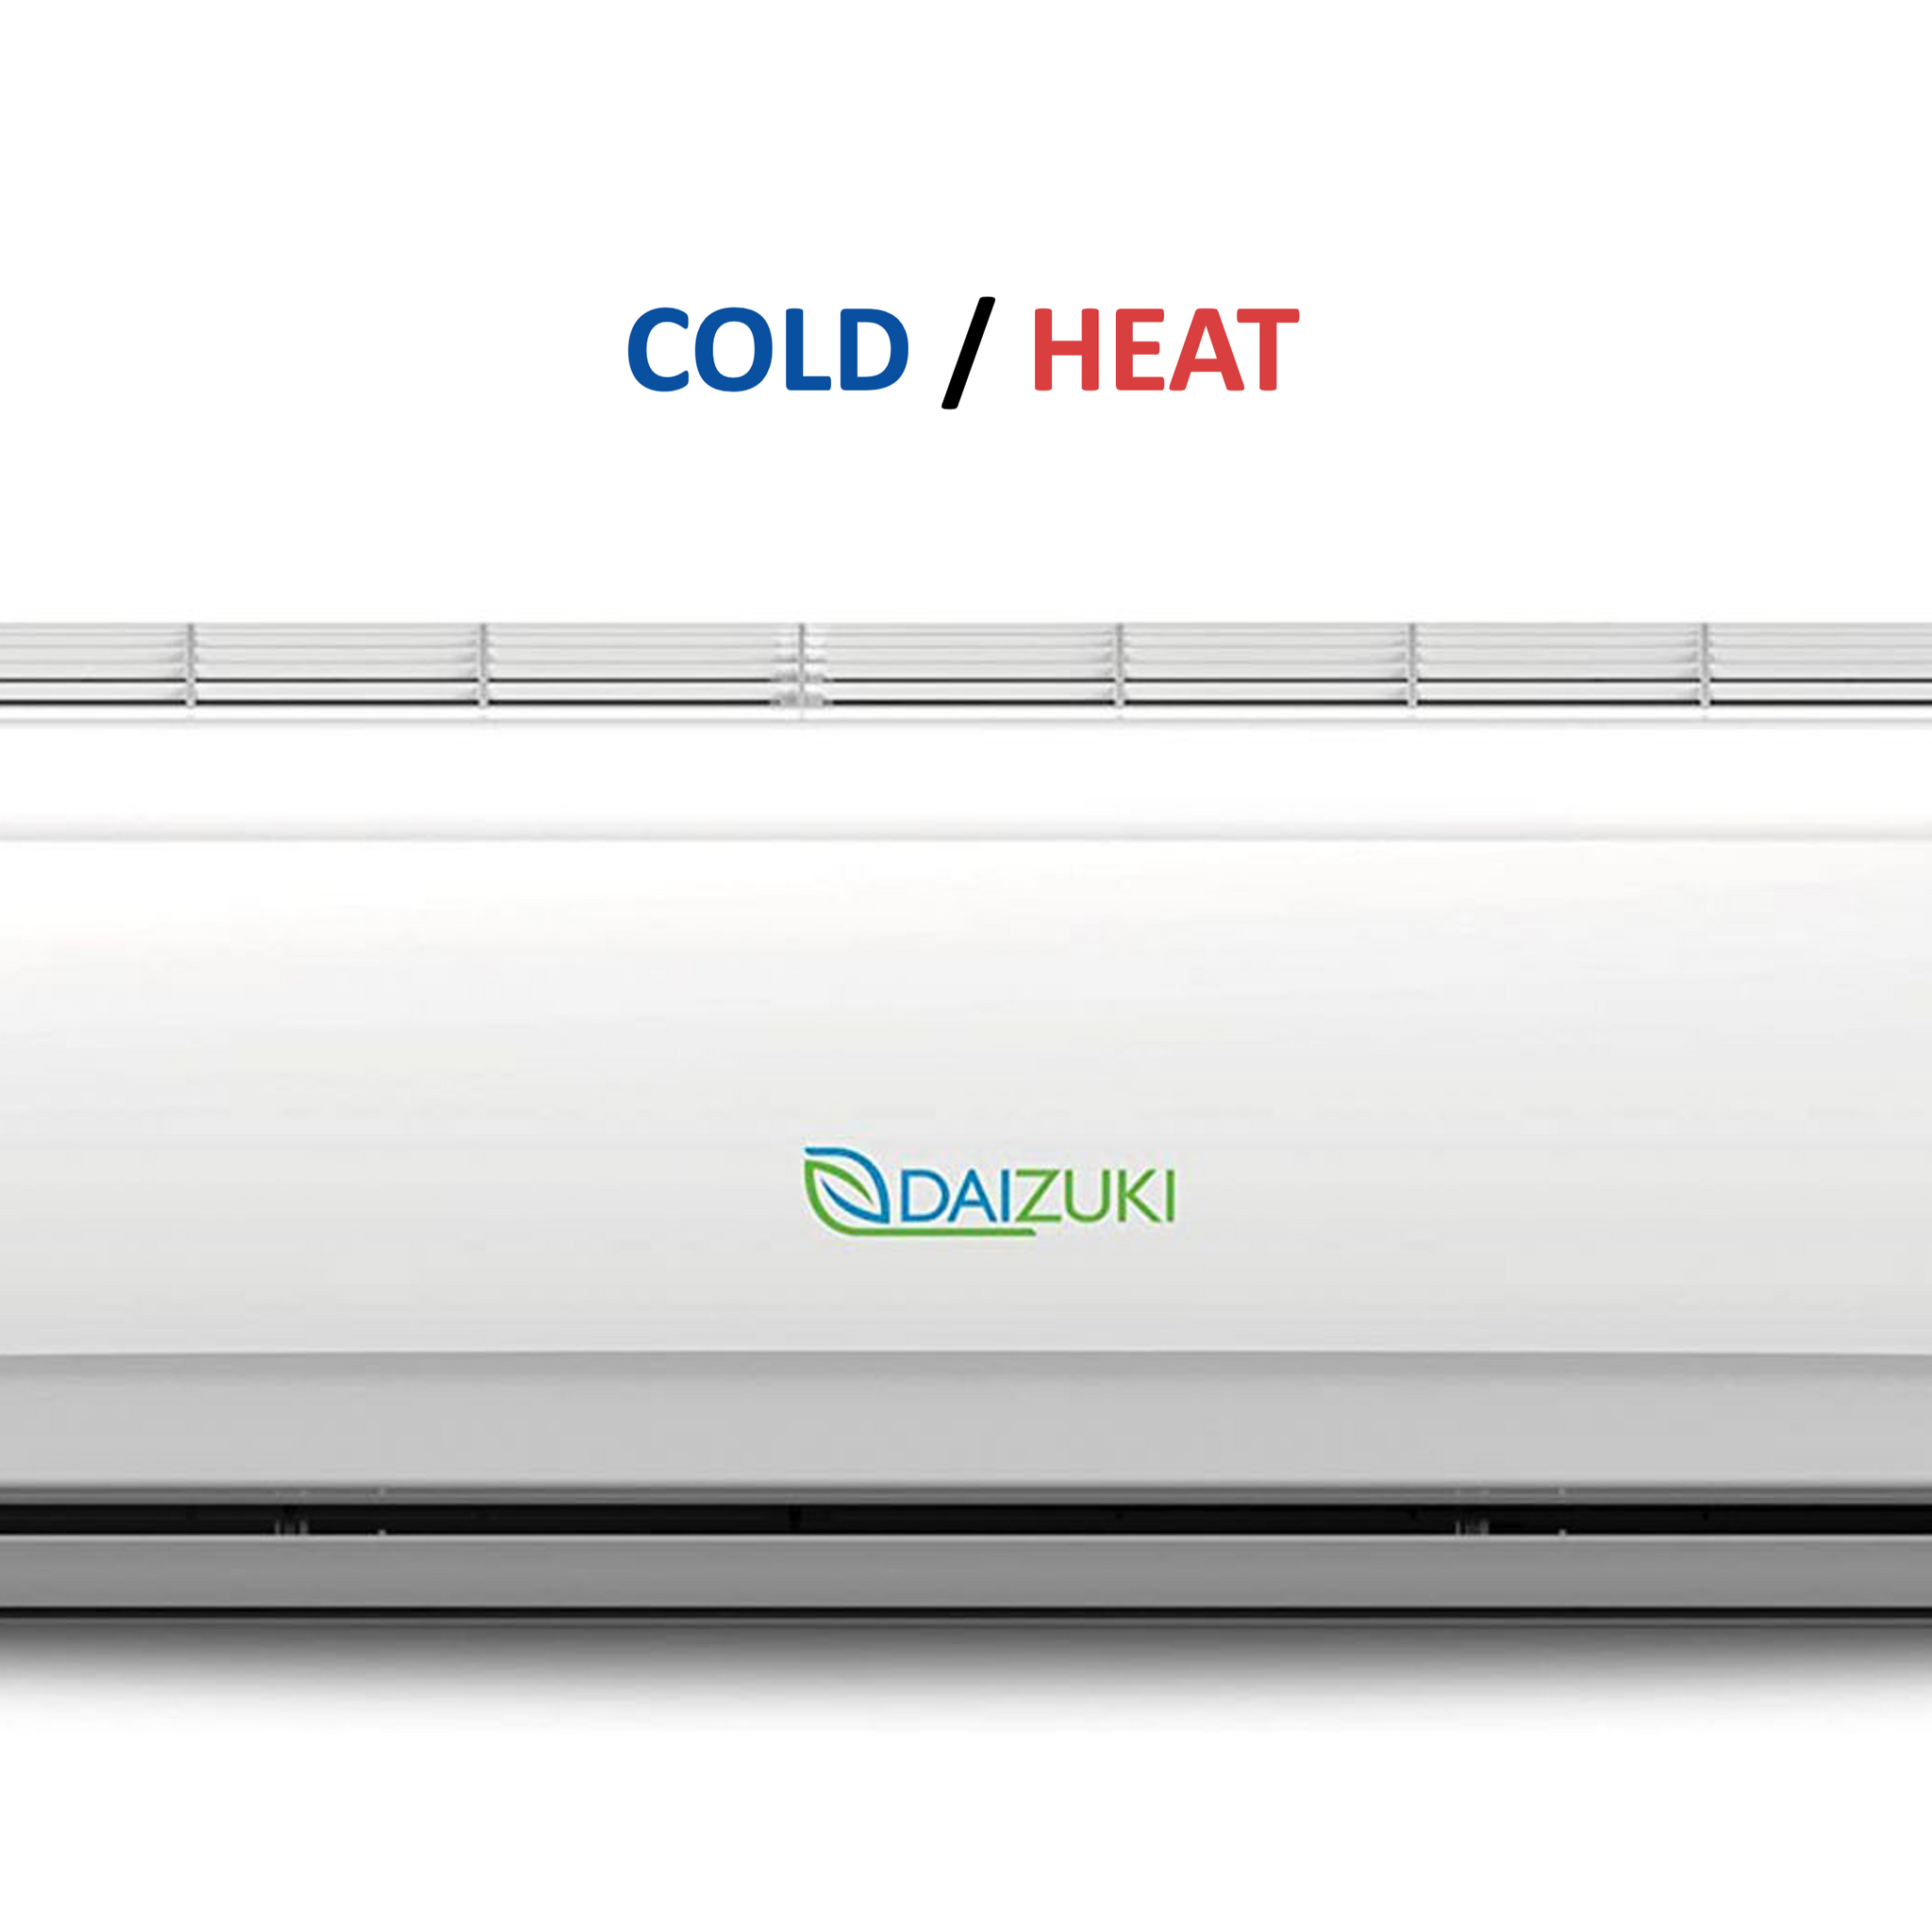 Minisplit Cold/Heat Air conditioner - 18,000BTU / 220V (20 SEER) - DAIZUKI